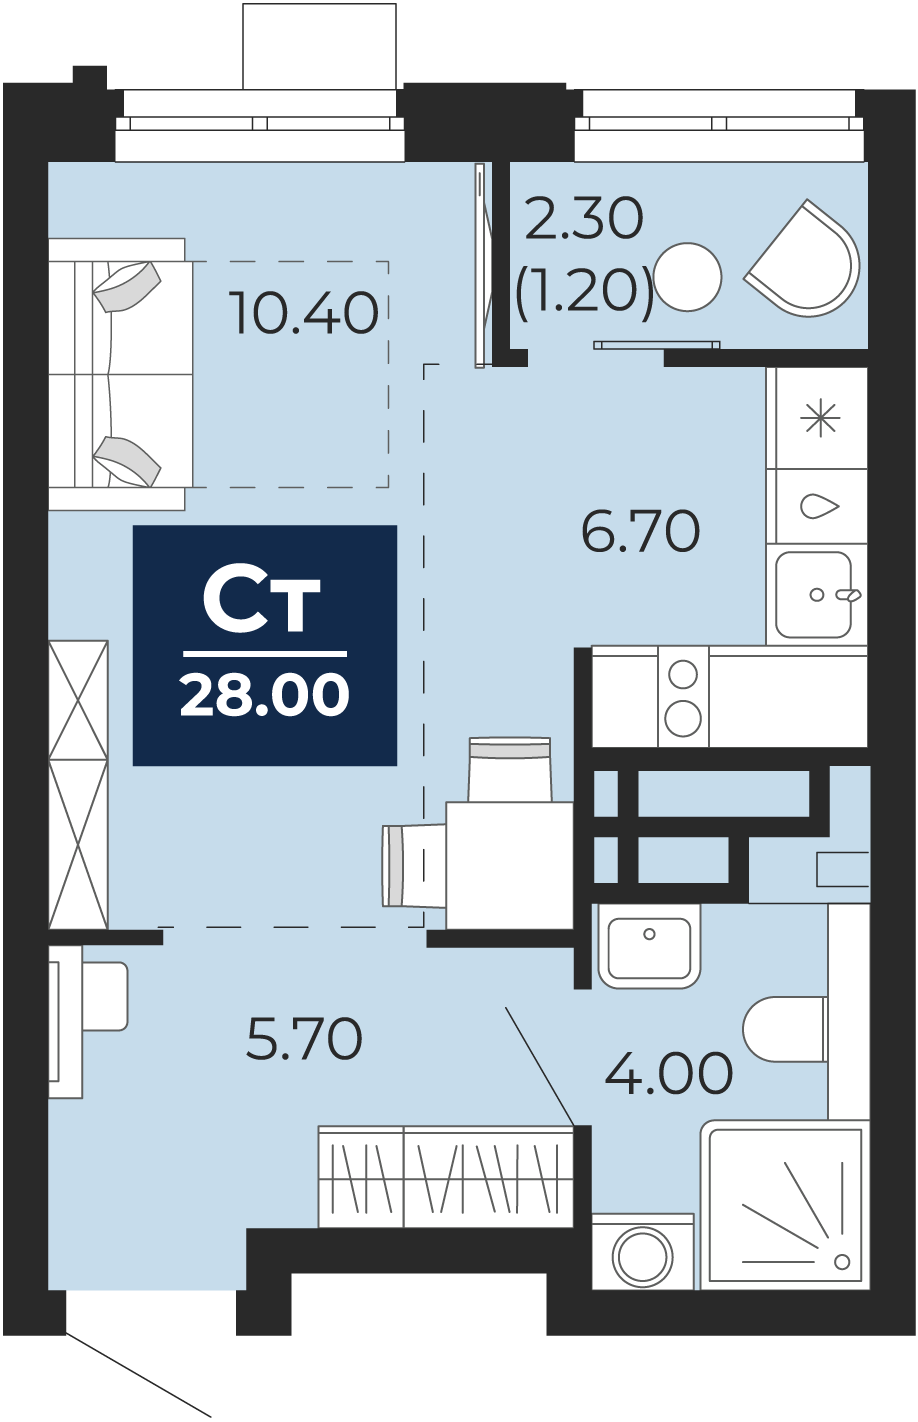 Квартира № 135, Студия, 28 кв. м, 7 этаж